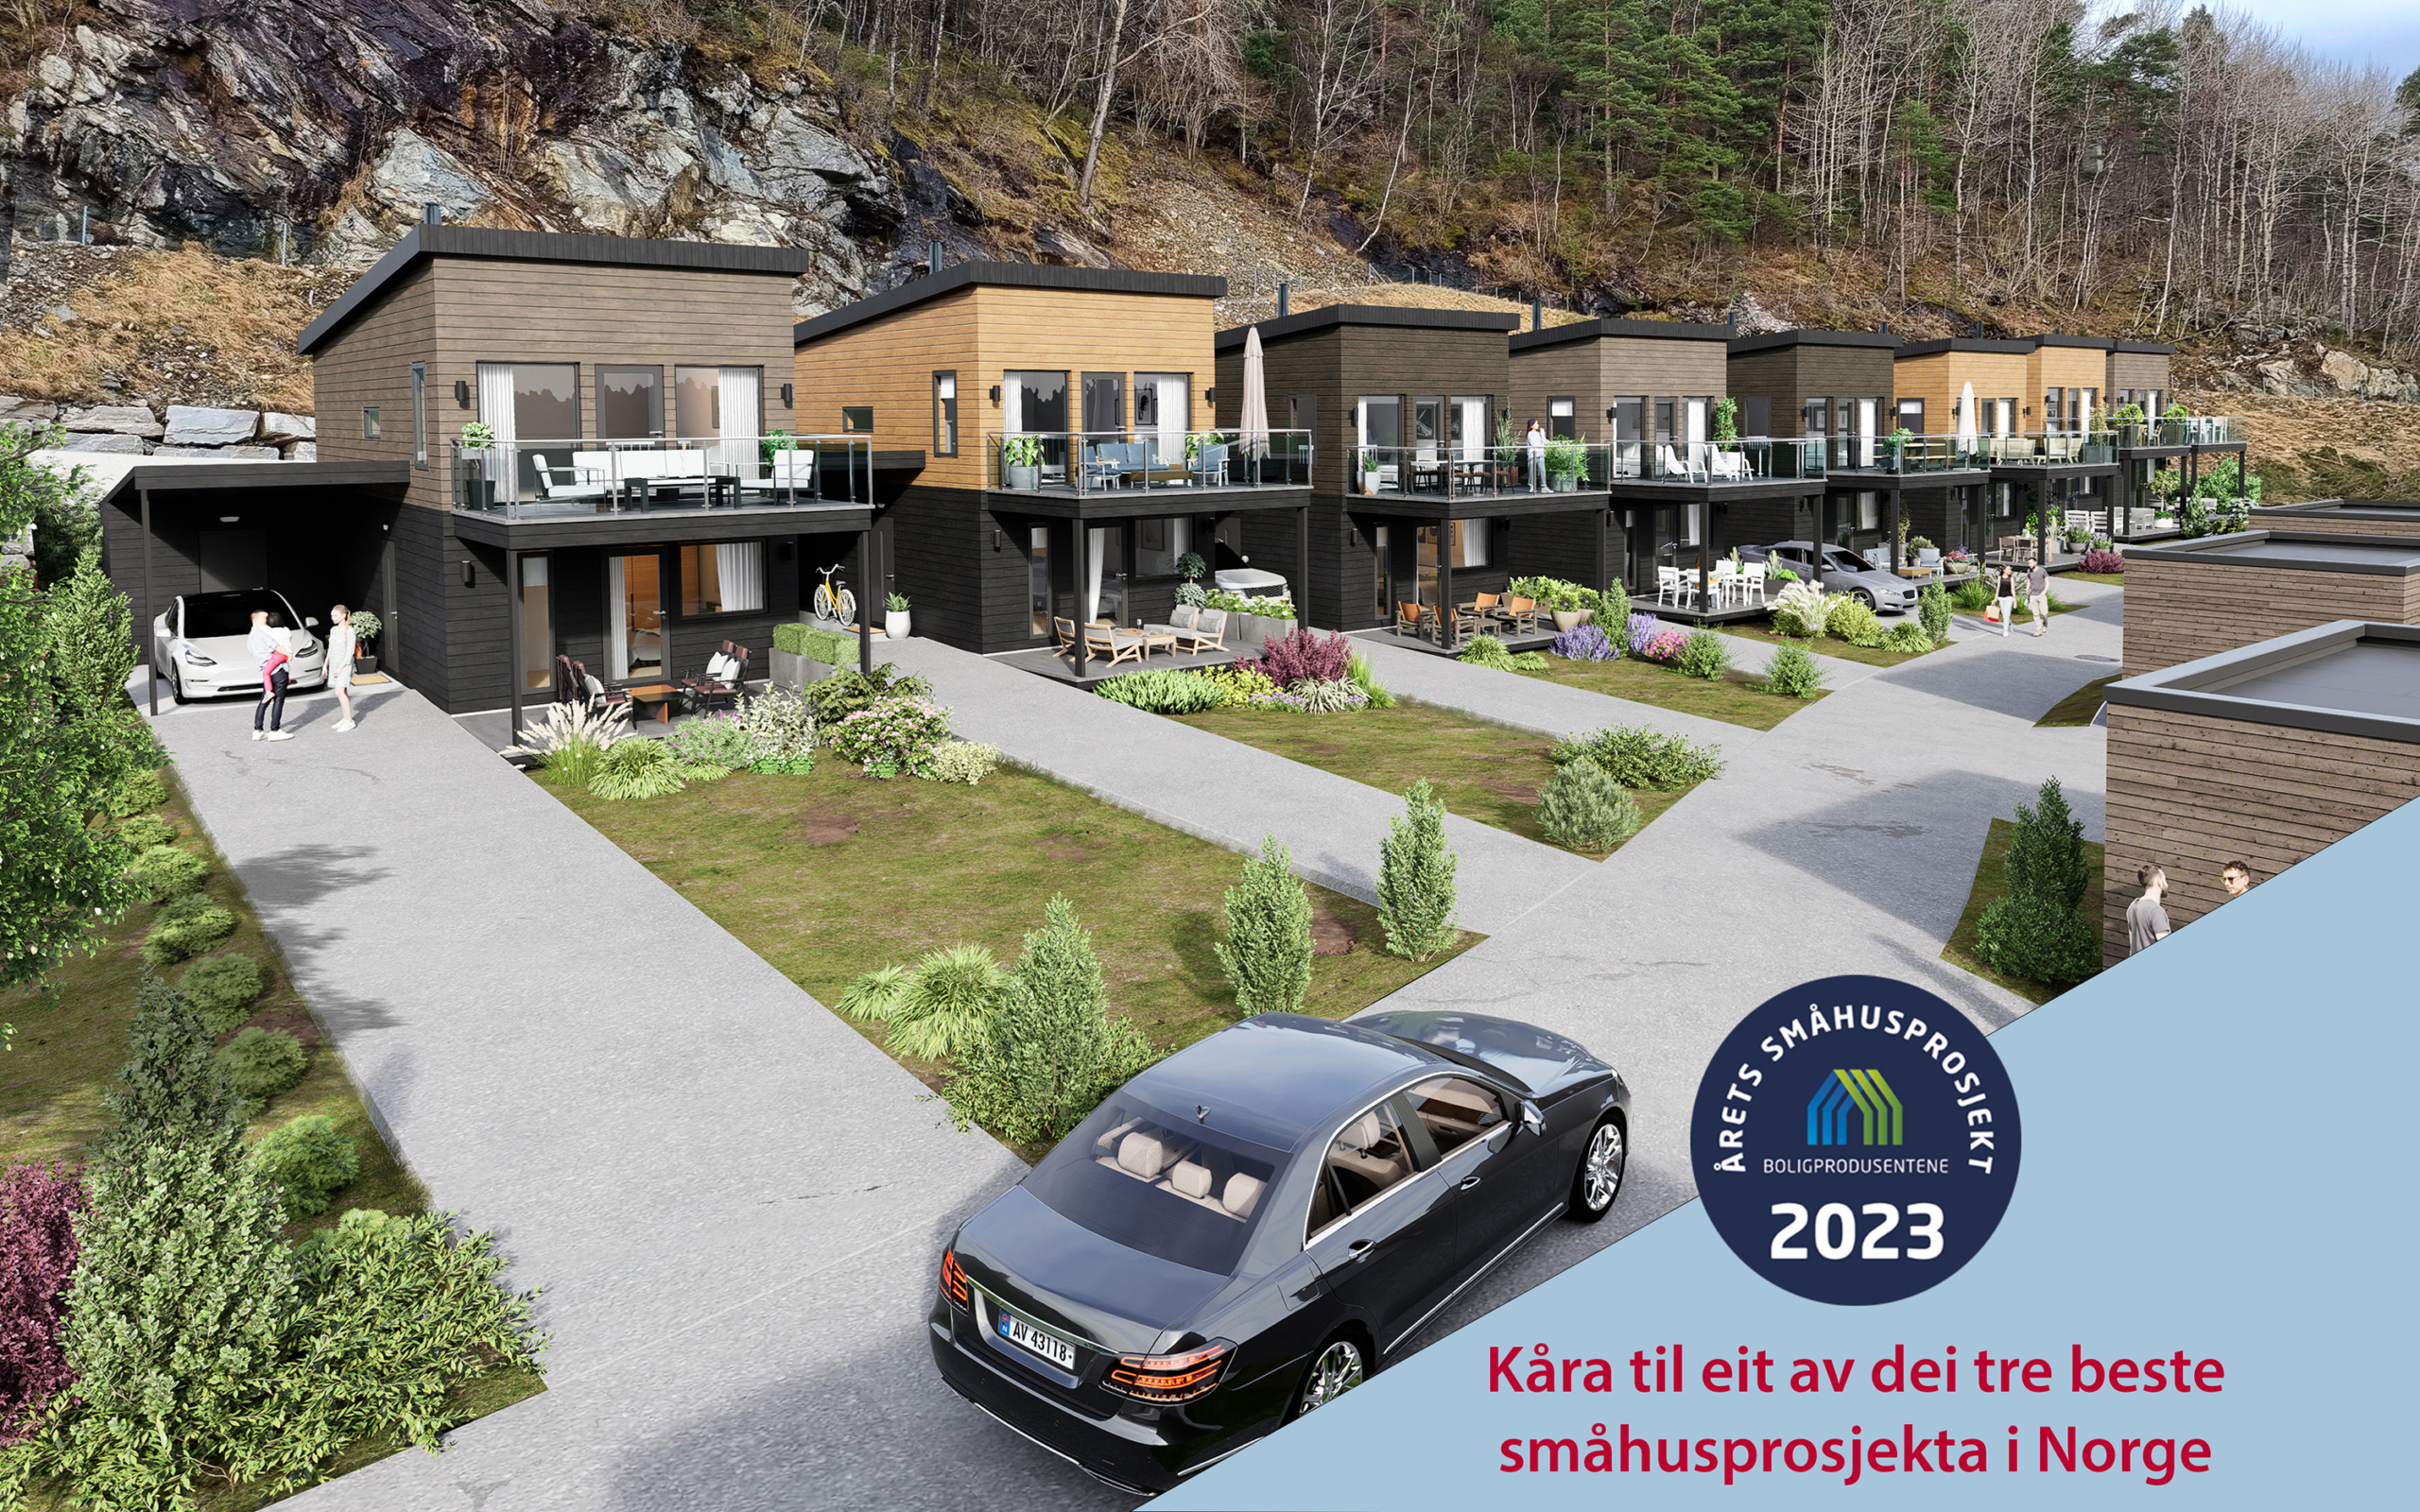 Instetunet - kåra til eit av dei tre beste småhusprosjekta i Norge